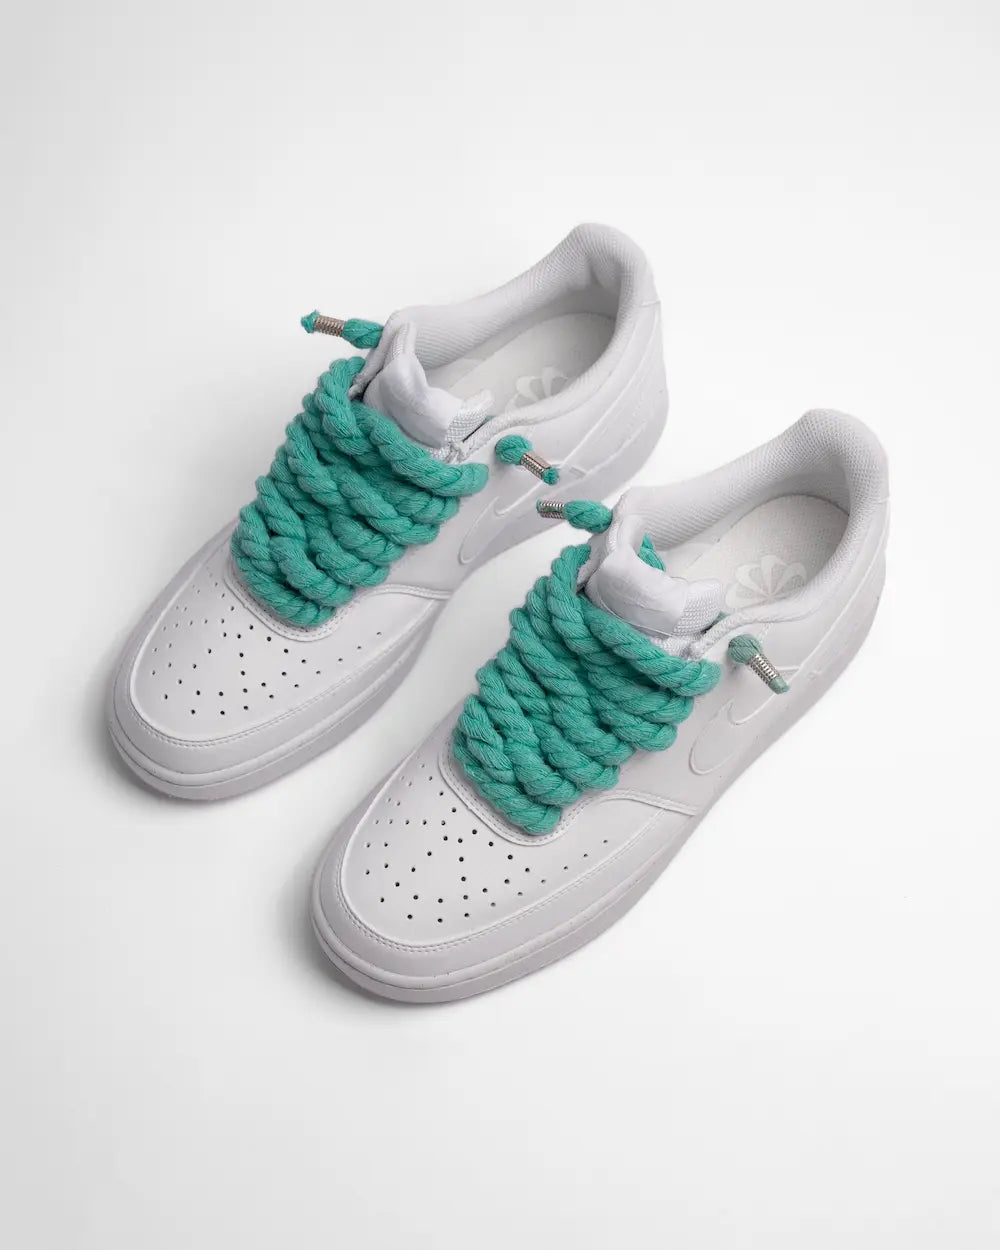 Nike Court Vision personalizzata con lacci in corda verde acqua